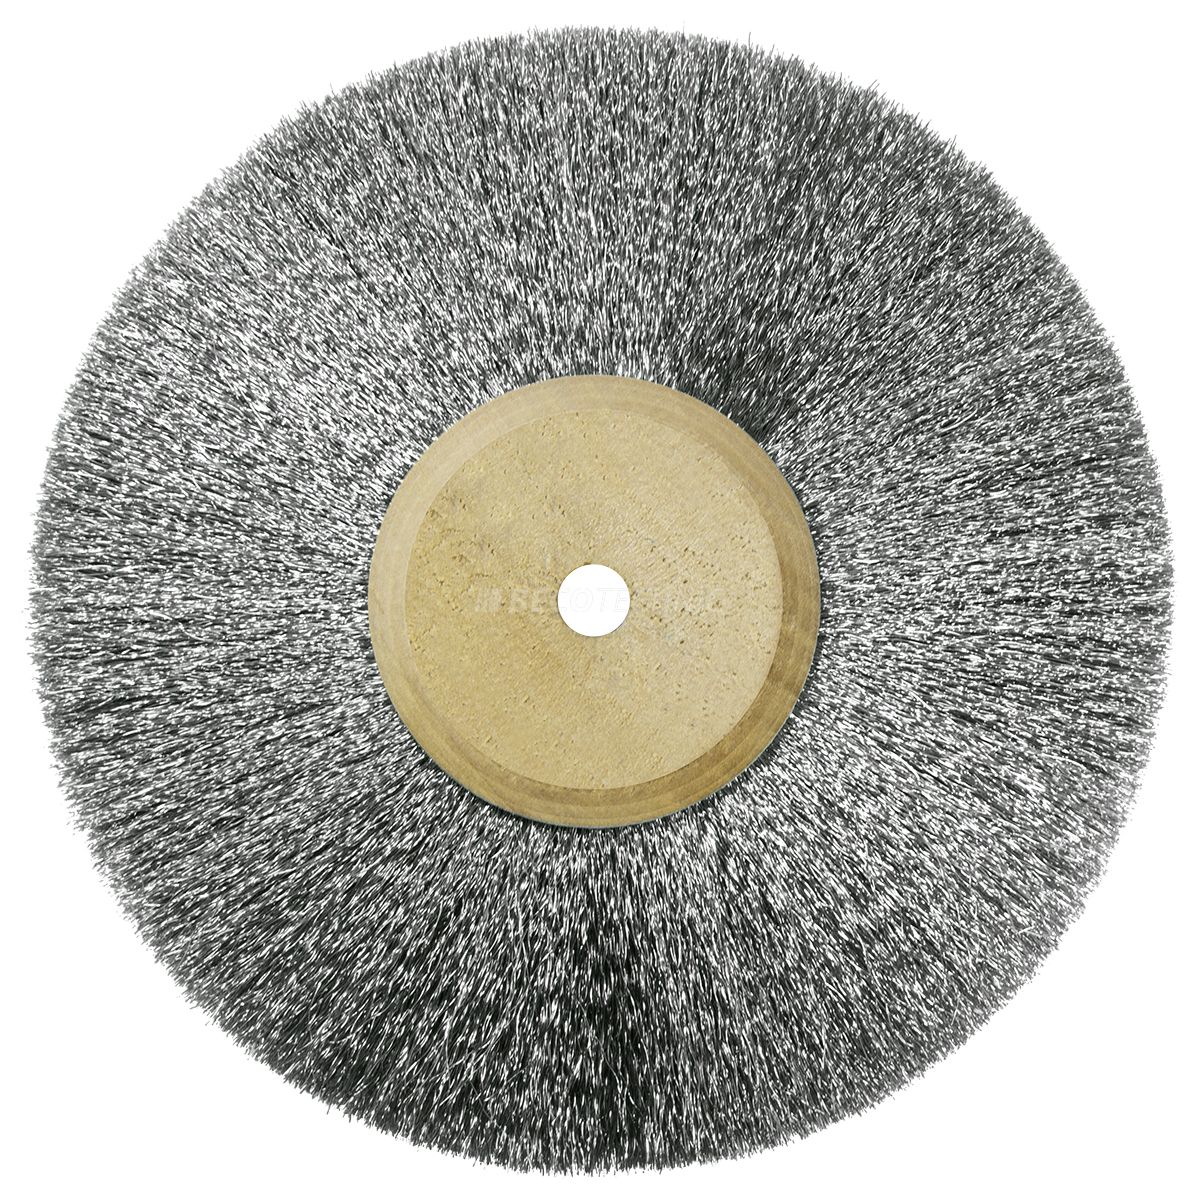 Ronde borstel, staal, Ø 100 mm, draad 0,1 mm, 4-rijig, met houten kern